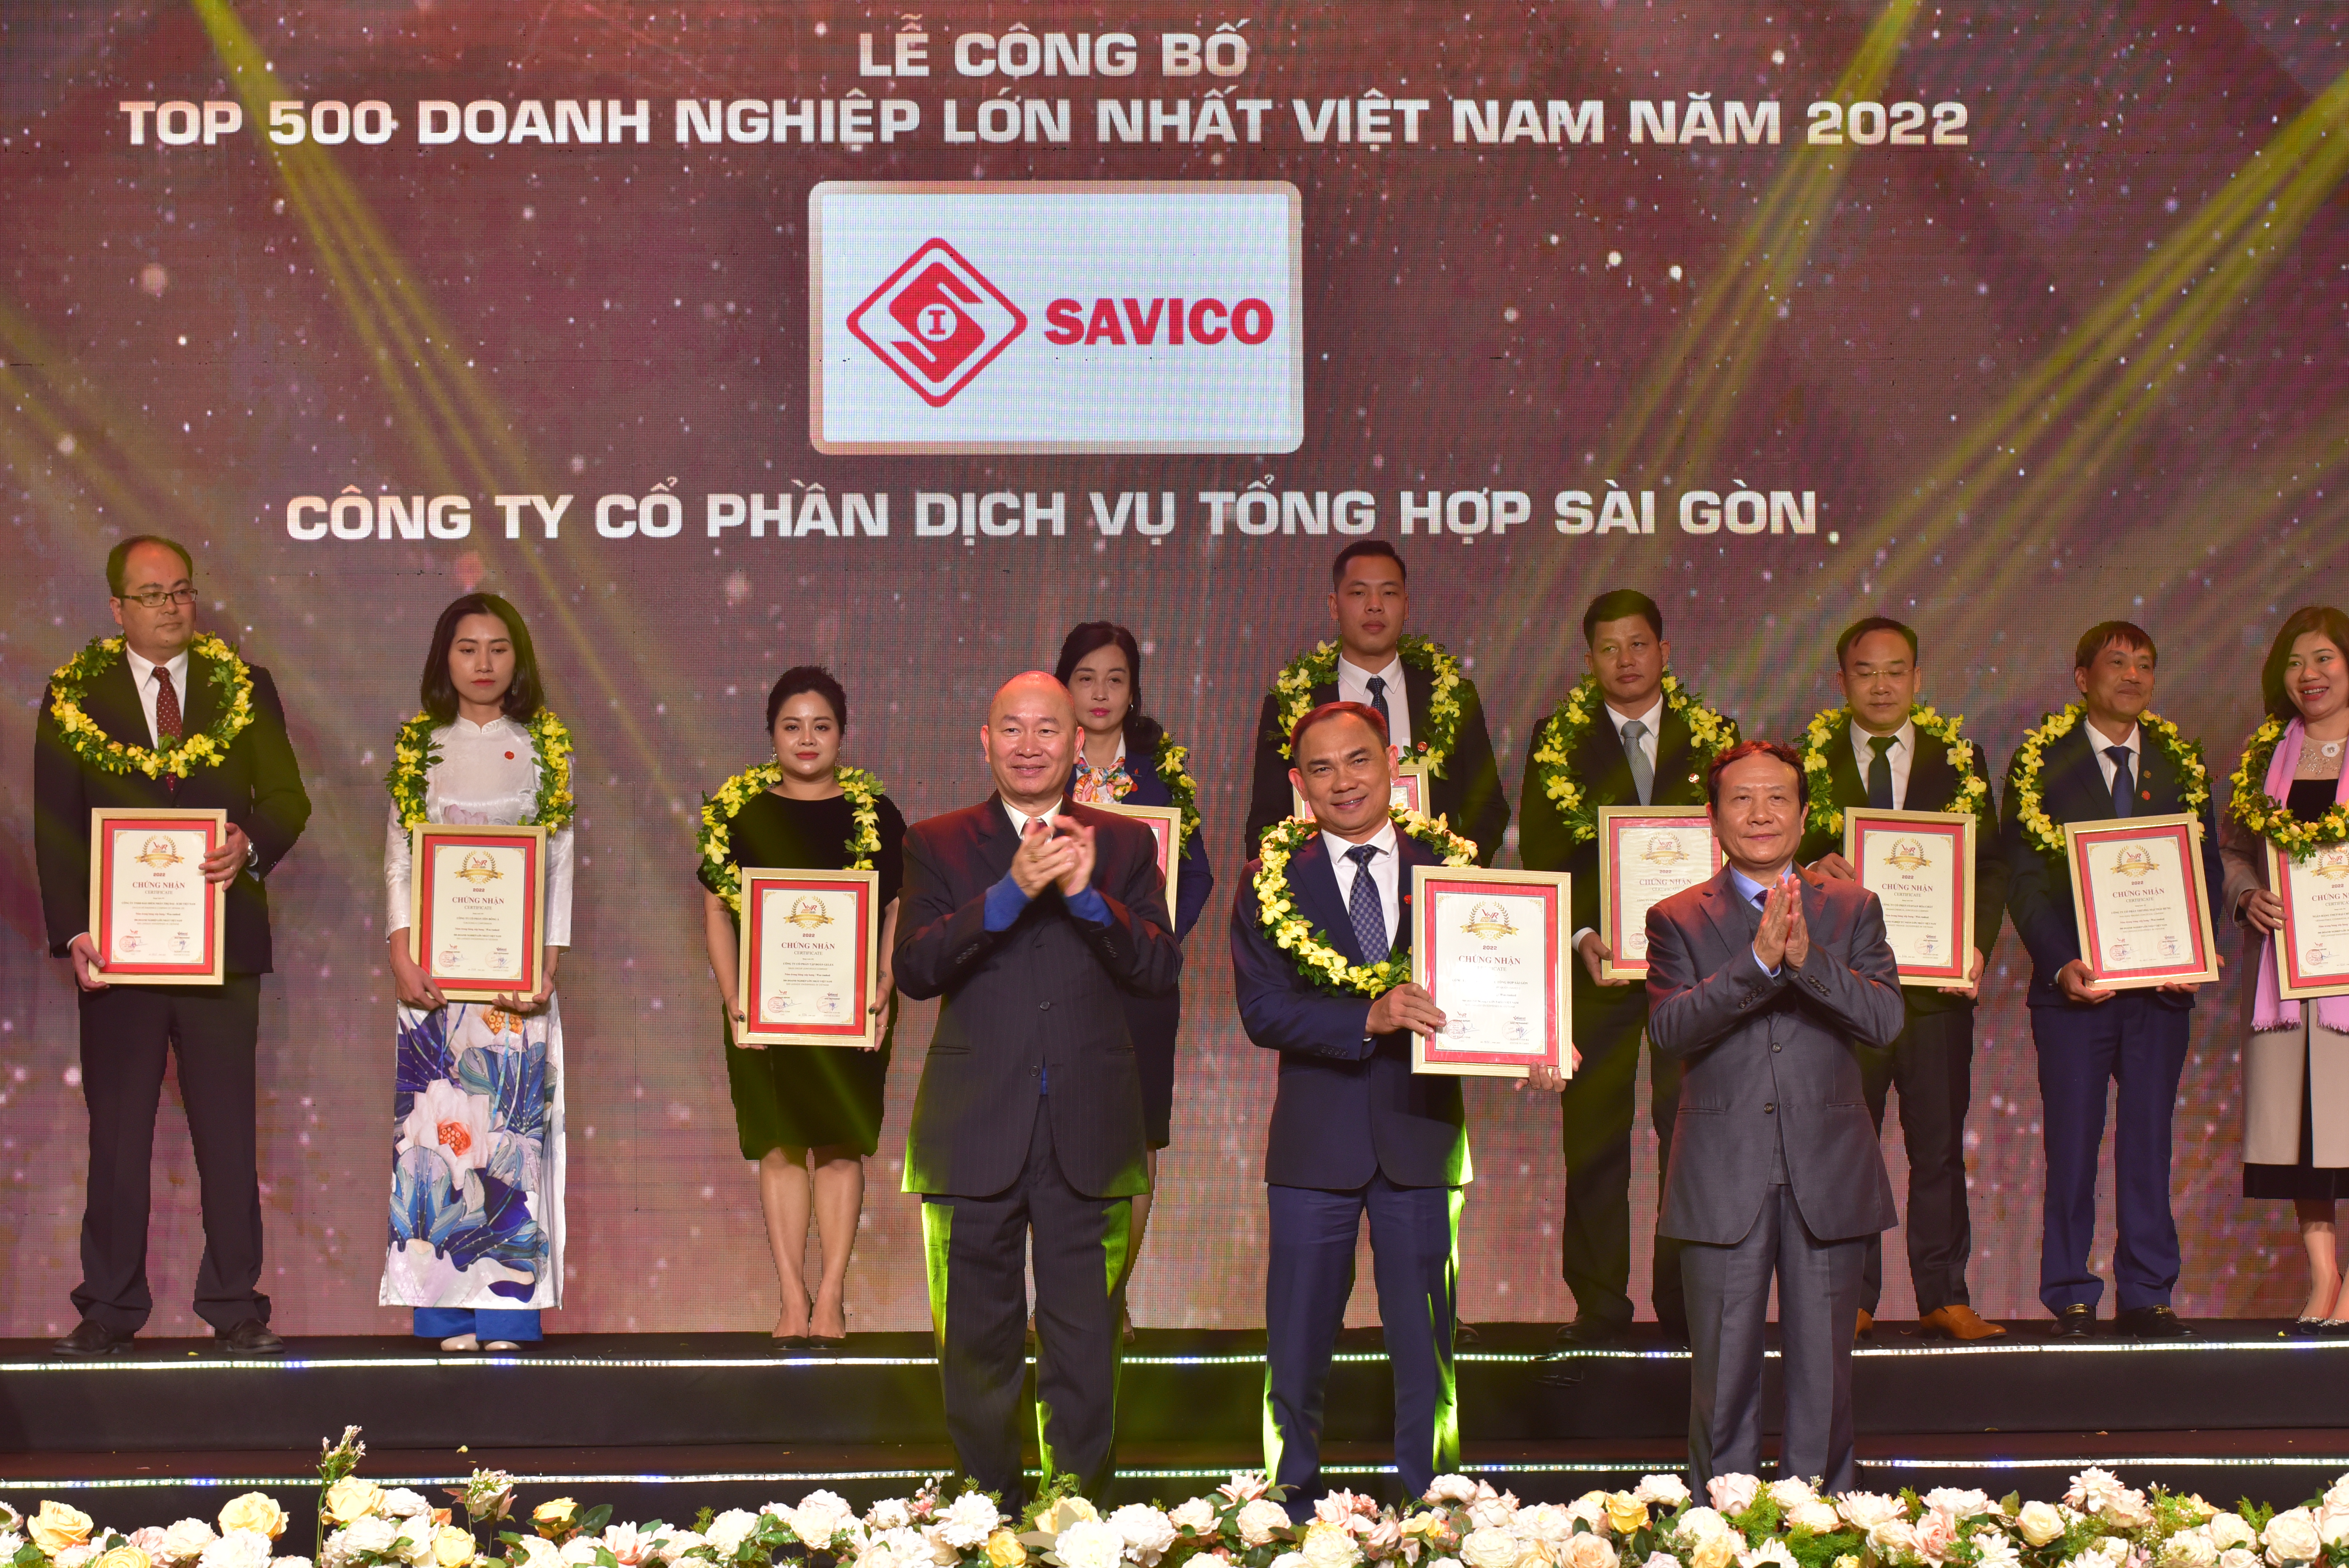 Top 500 Doanh nghiệp lớn nhất Việt Nam 2022